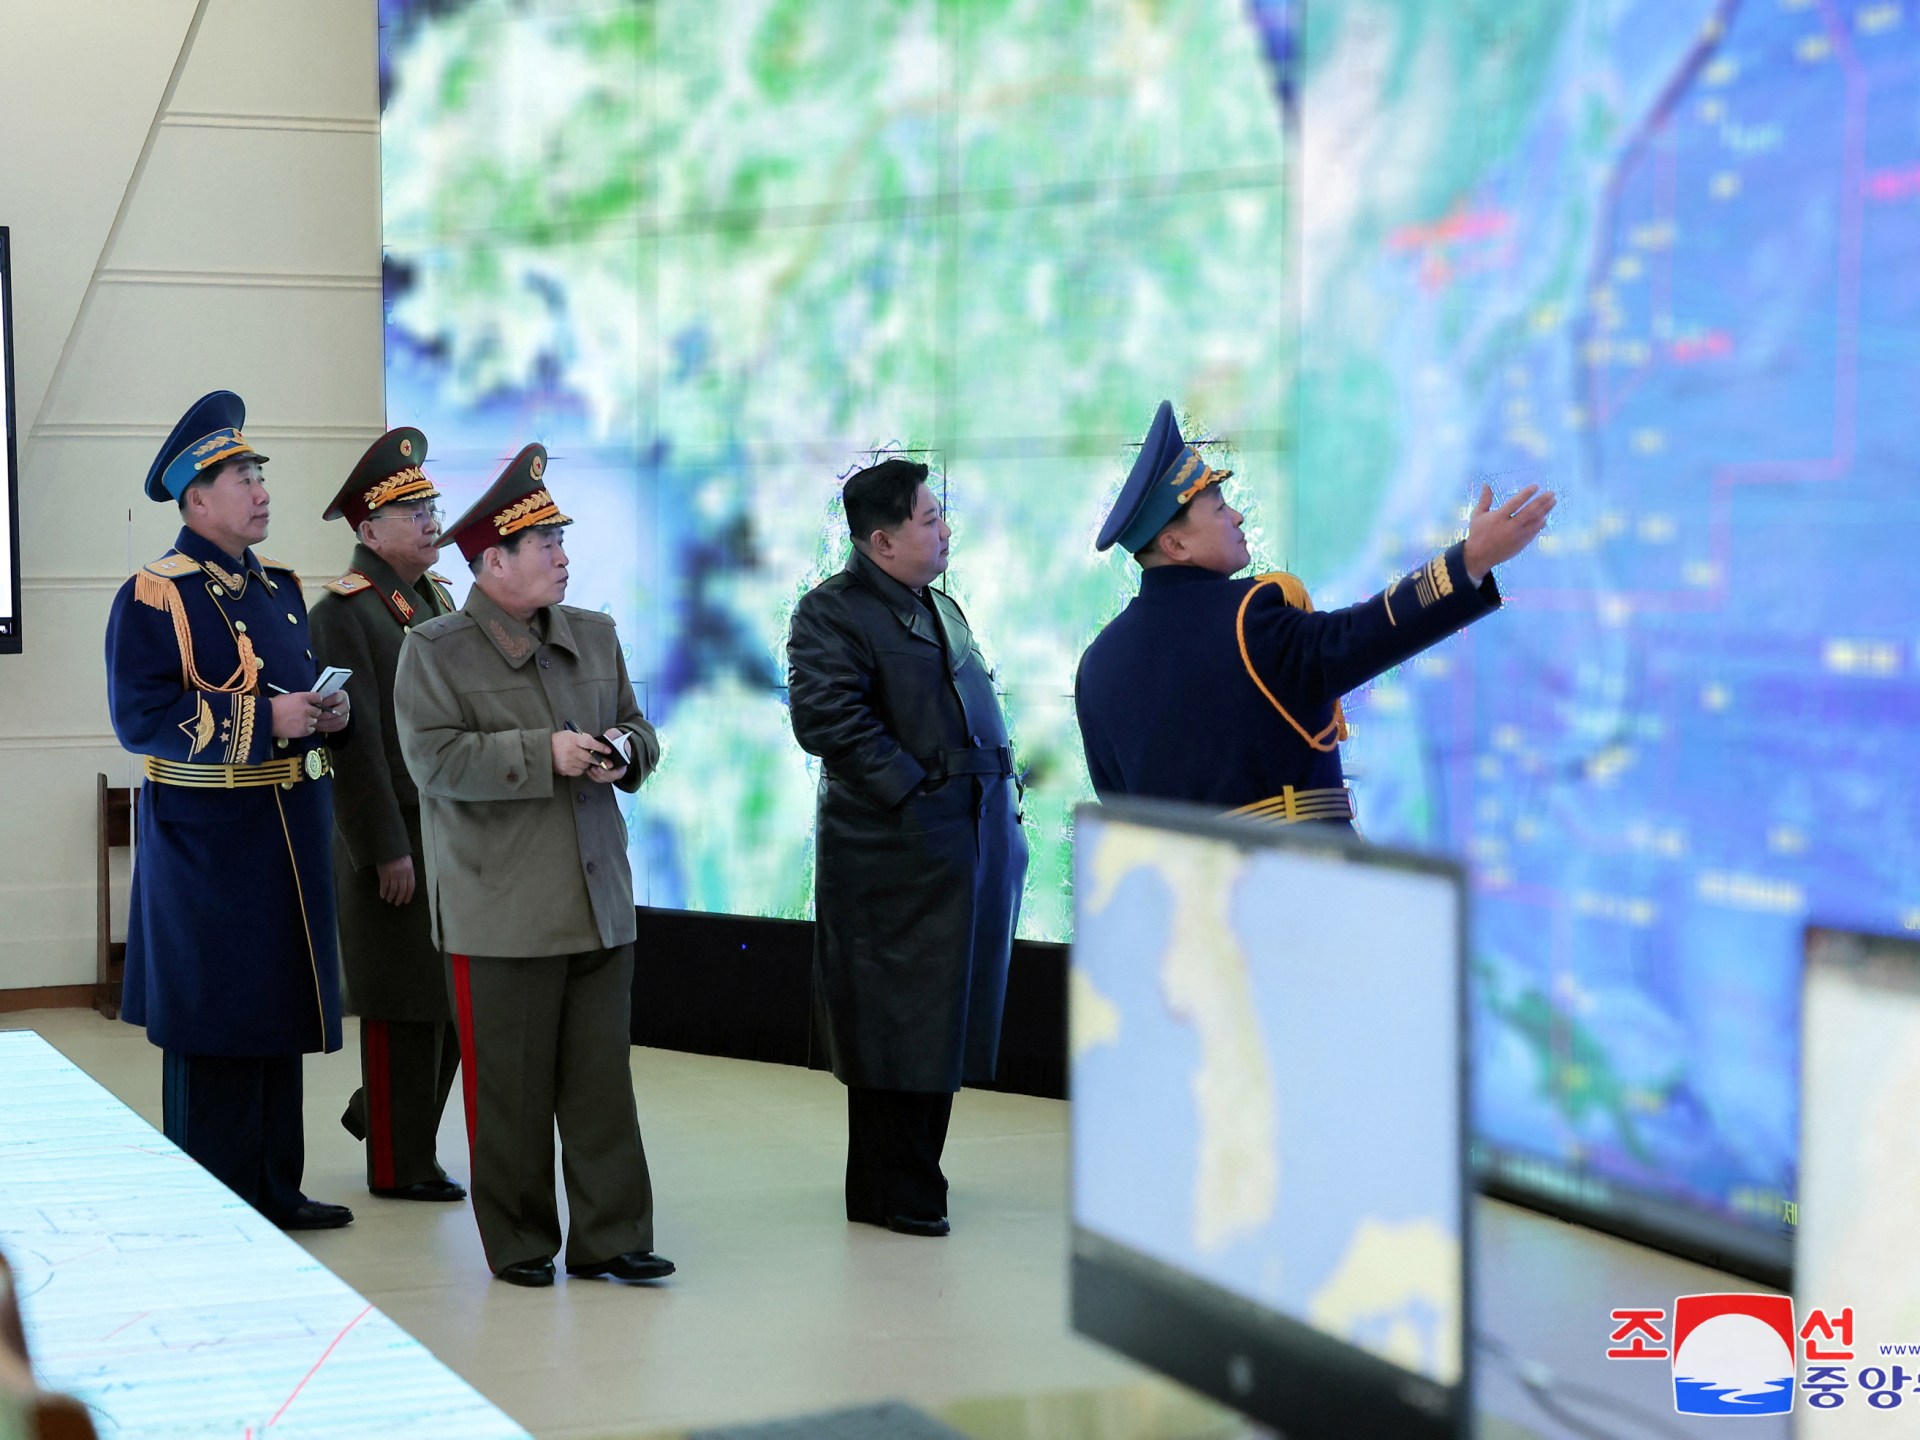 كوريا الشمالية تلوح بـ”إعلان الحرب” وصراع الفضاء يحتدم | أخبار – البوكس نيوز